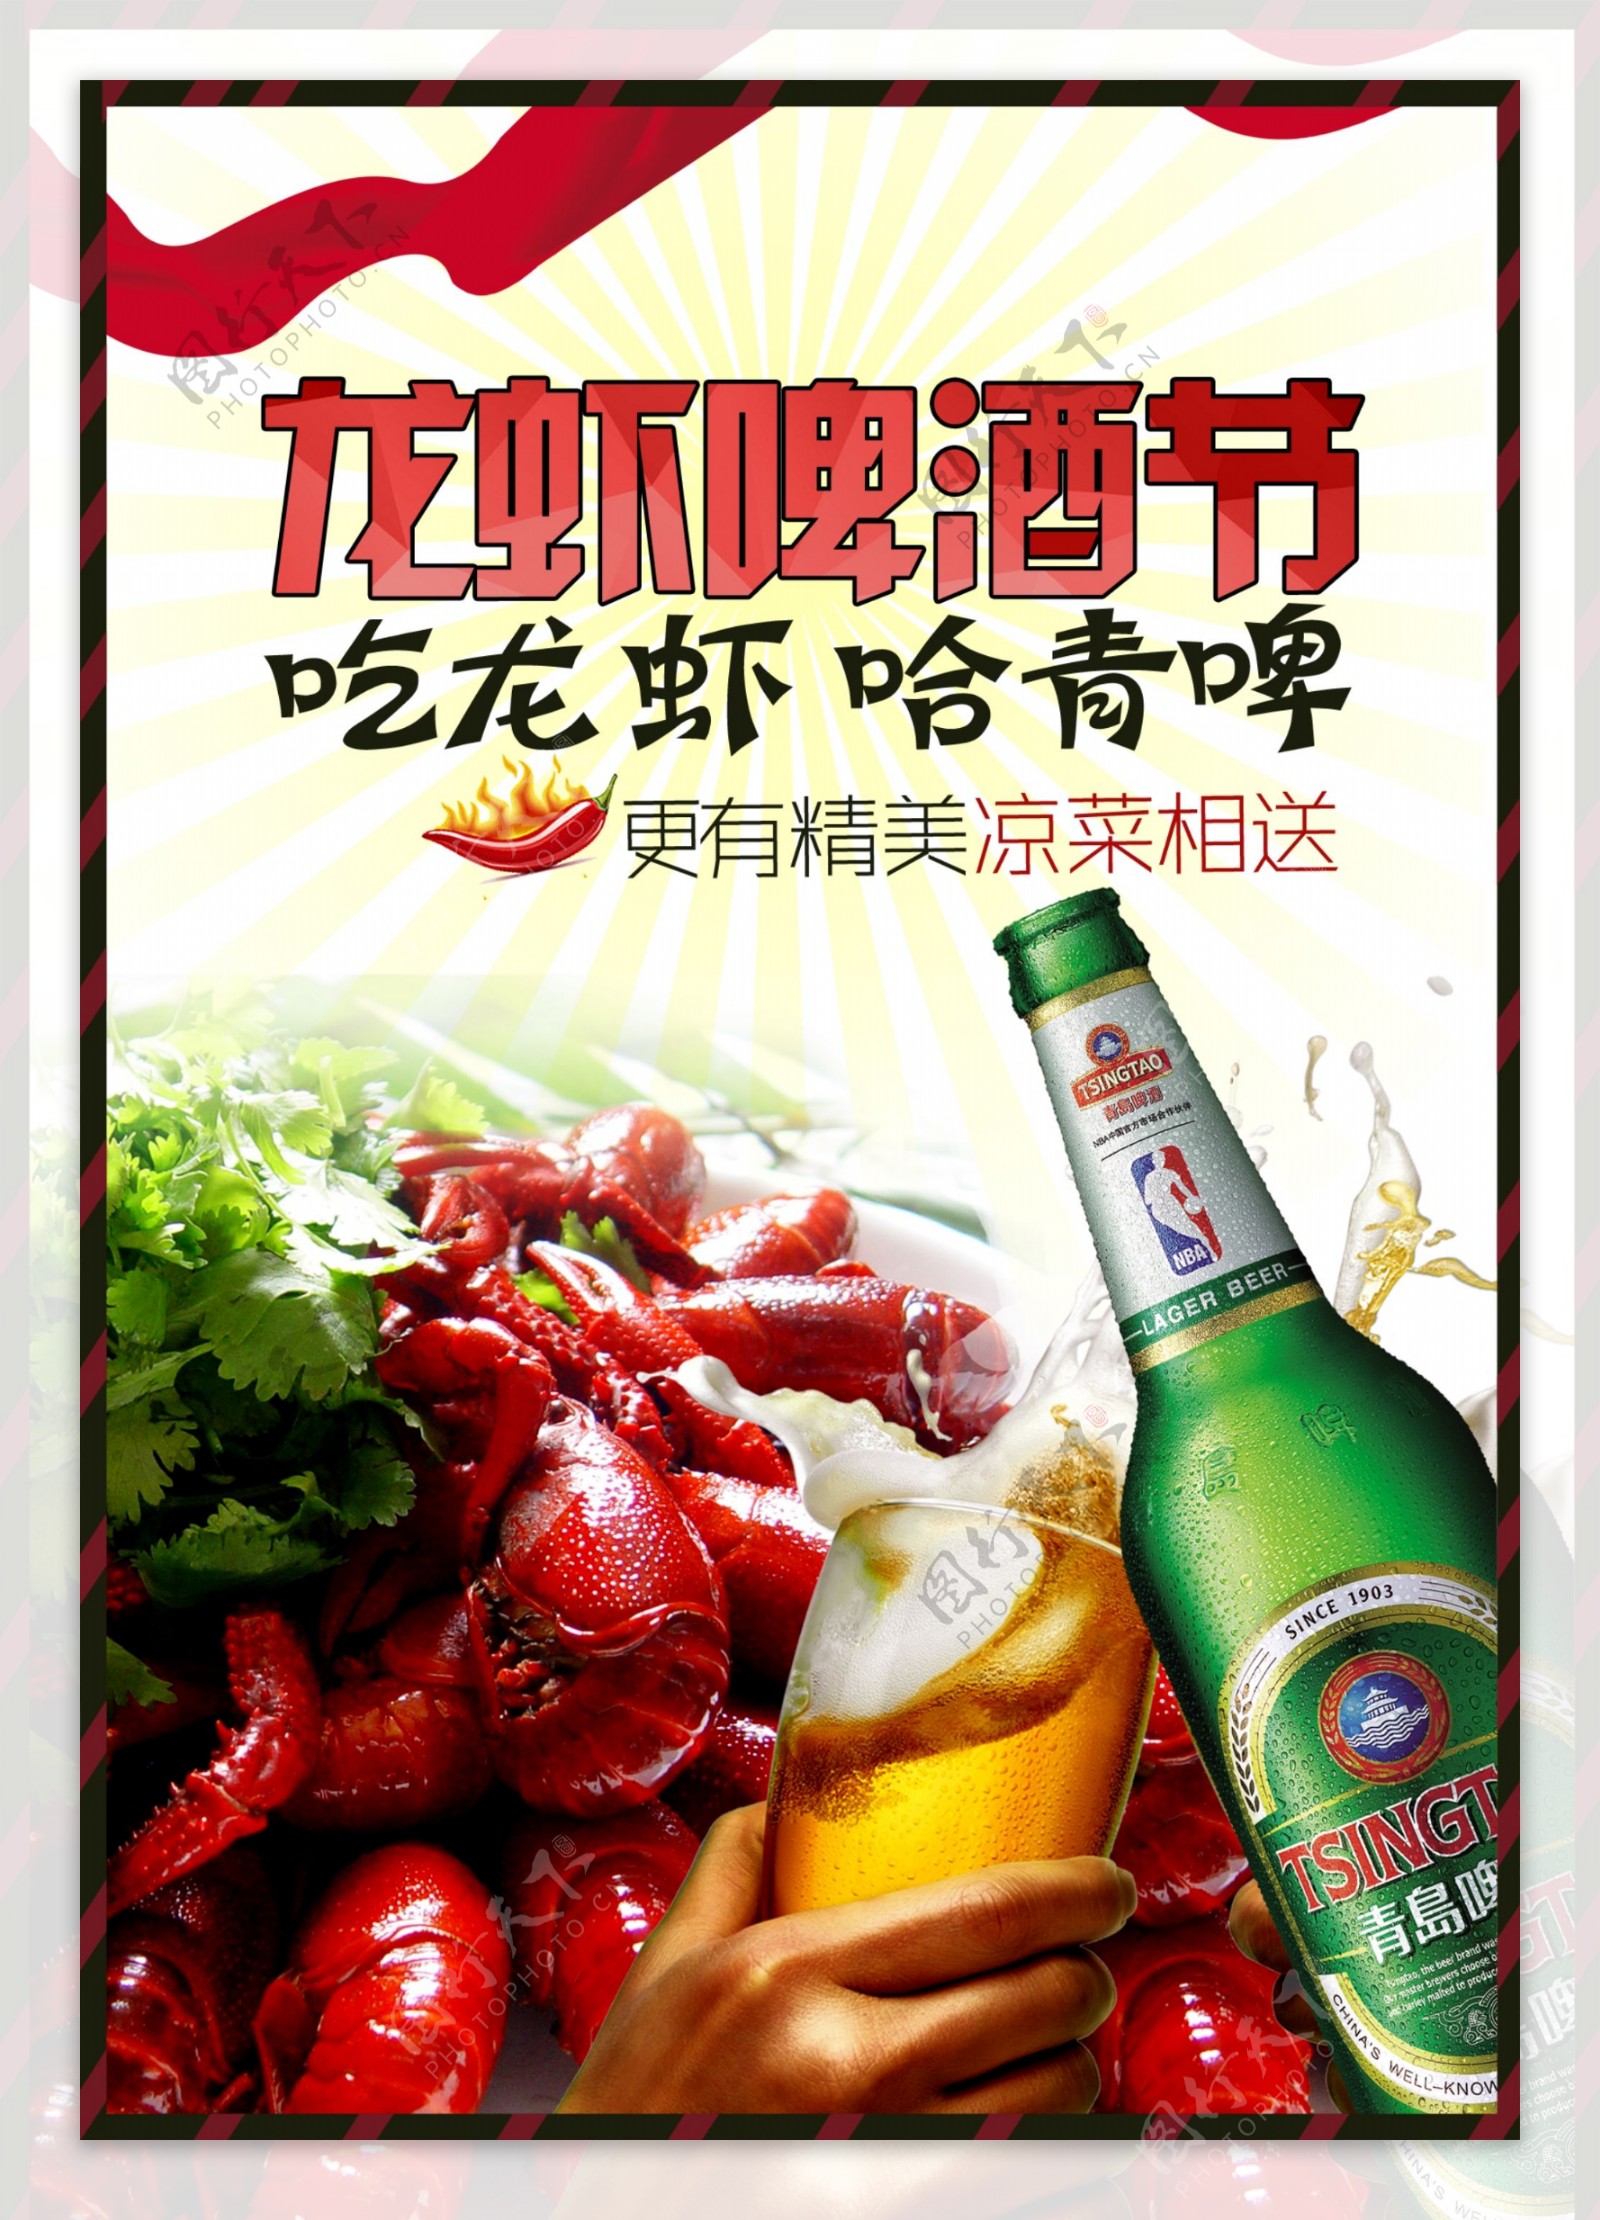 龙虾啤酒节海报